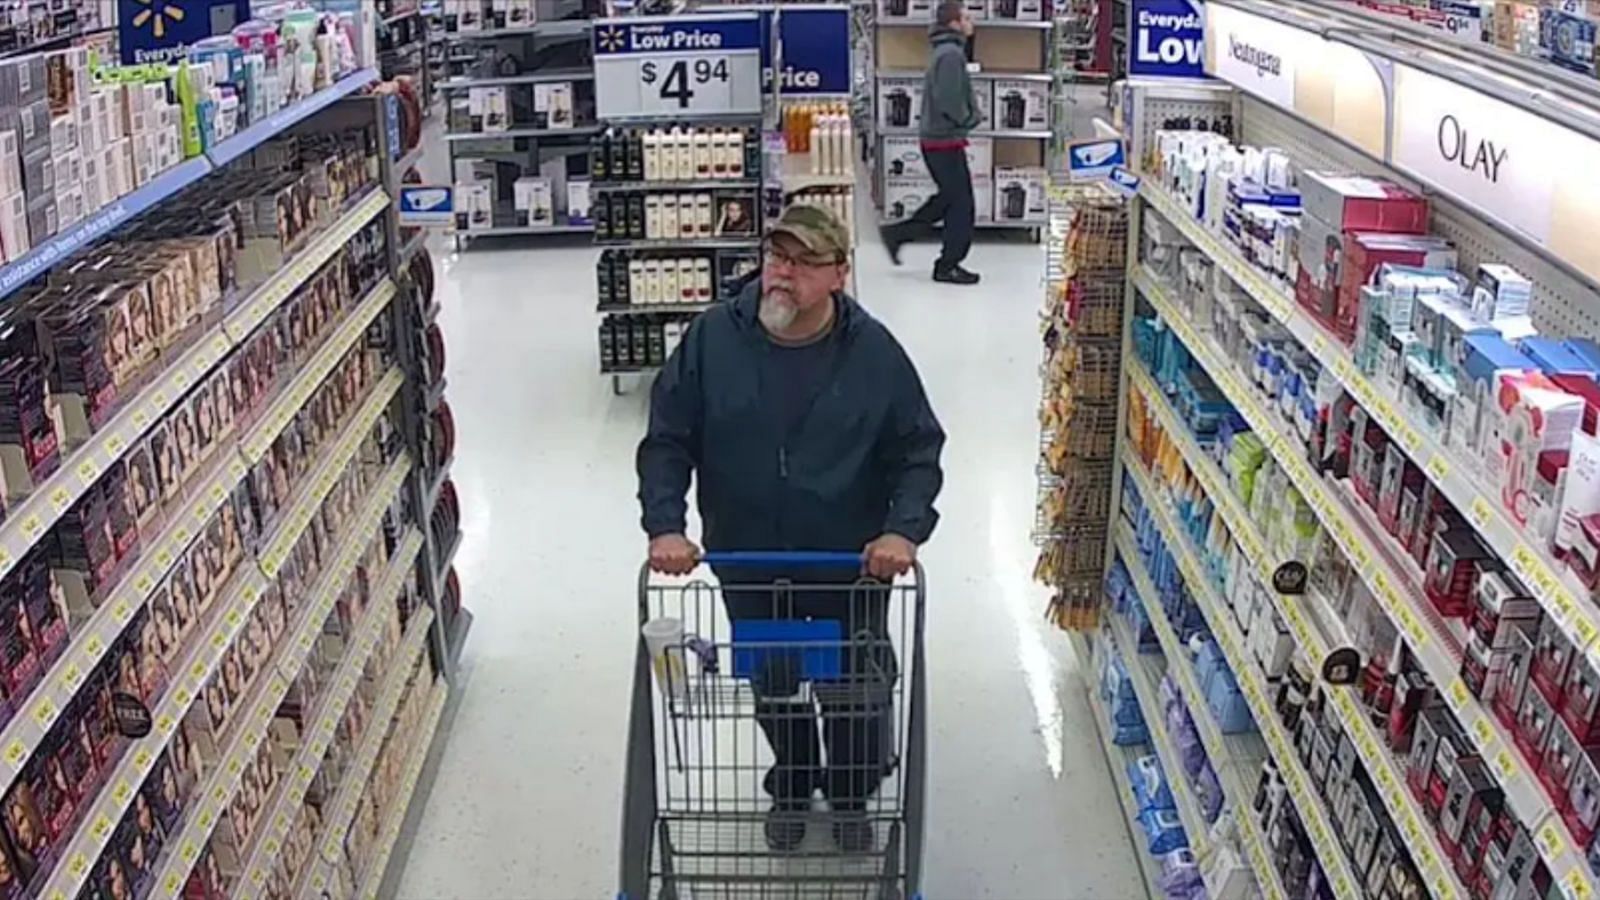 CCTV footage of Tad Cummins at Walmart (Image via YouTube/ AL.com)